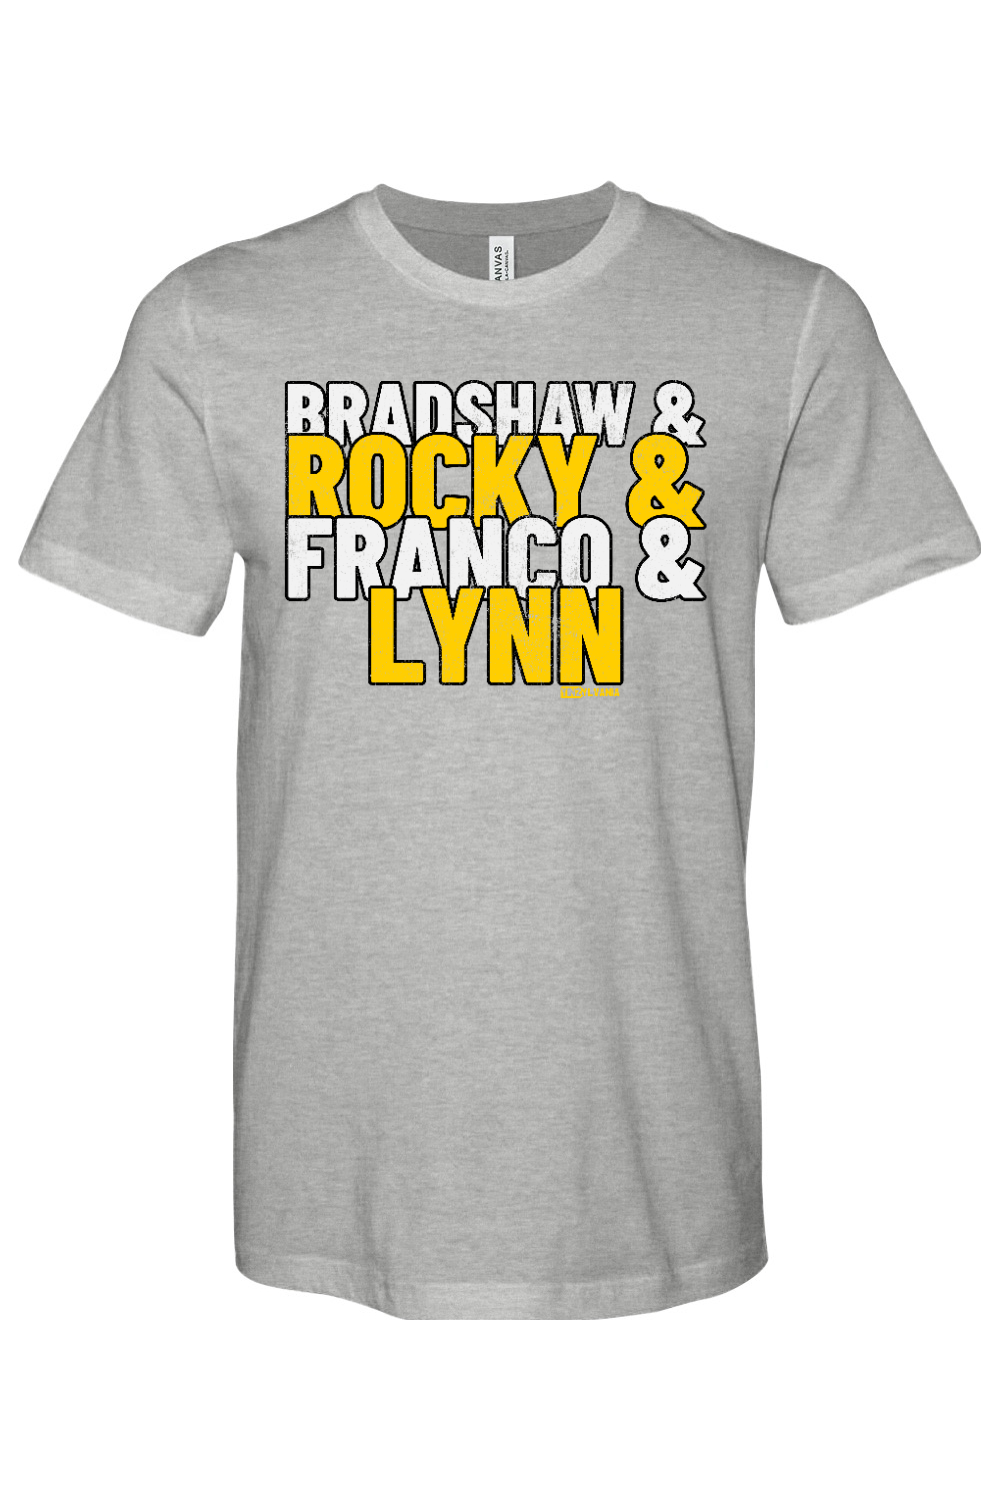 Bradshaw & Rocky & Franco & Lynn - Yinzylvania